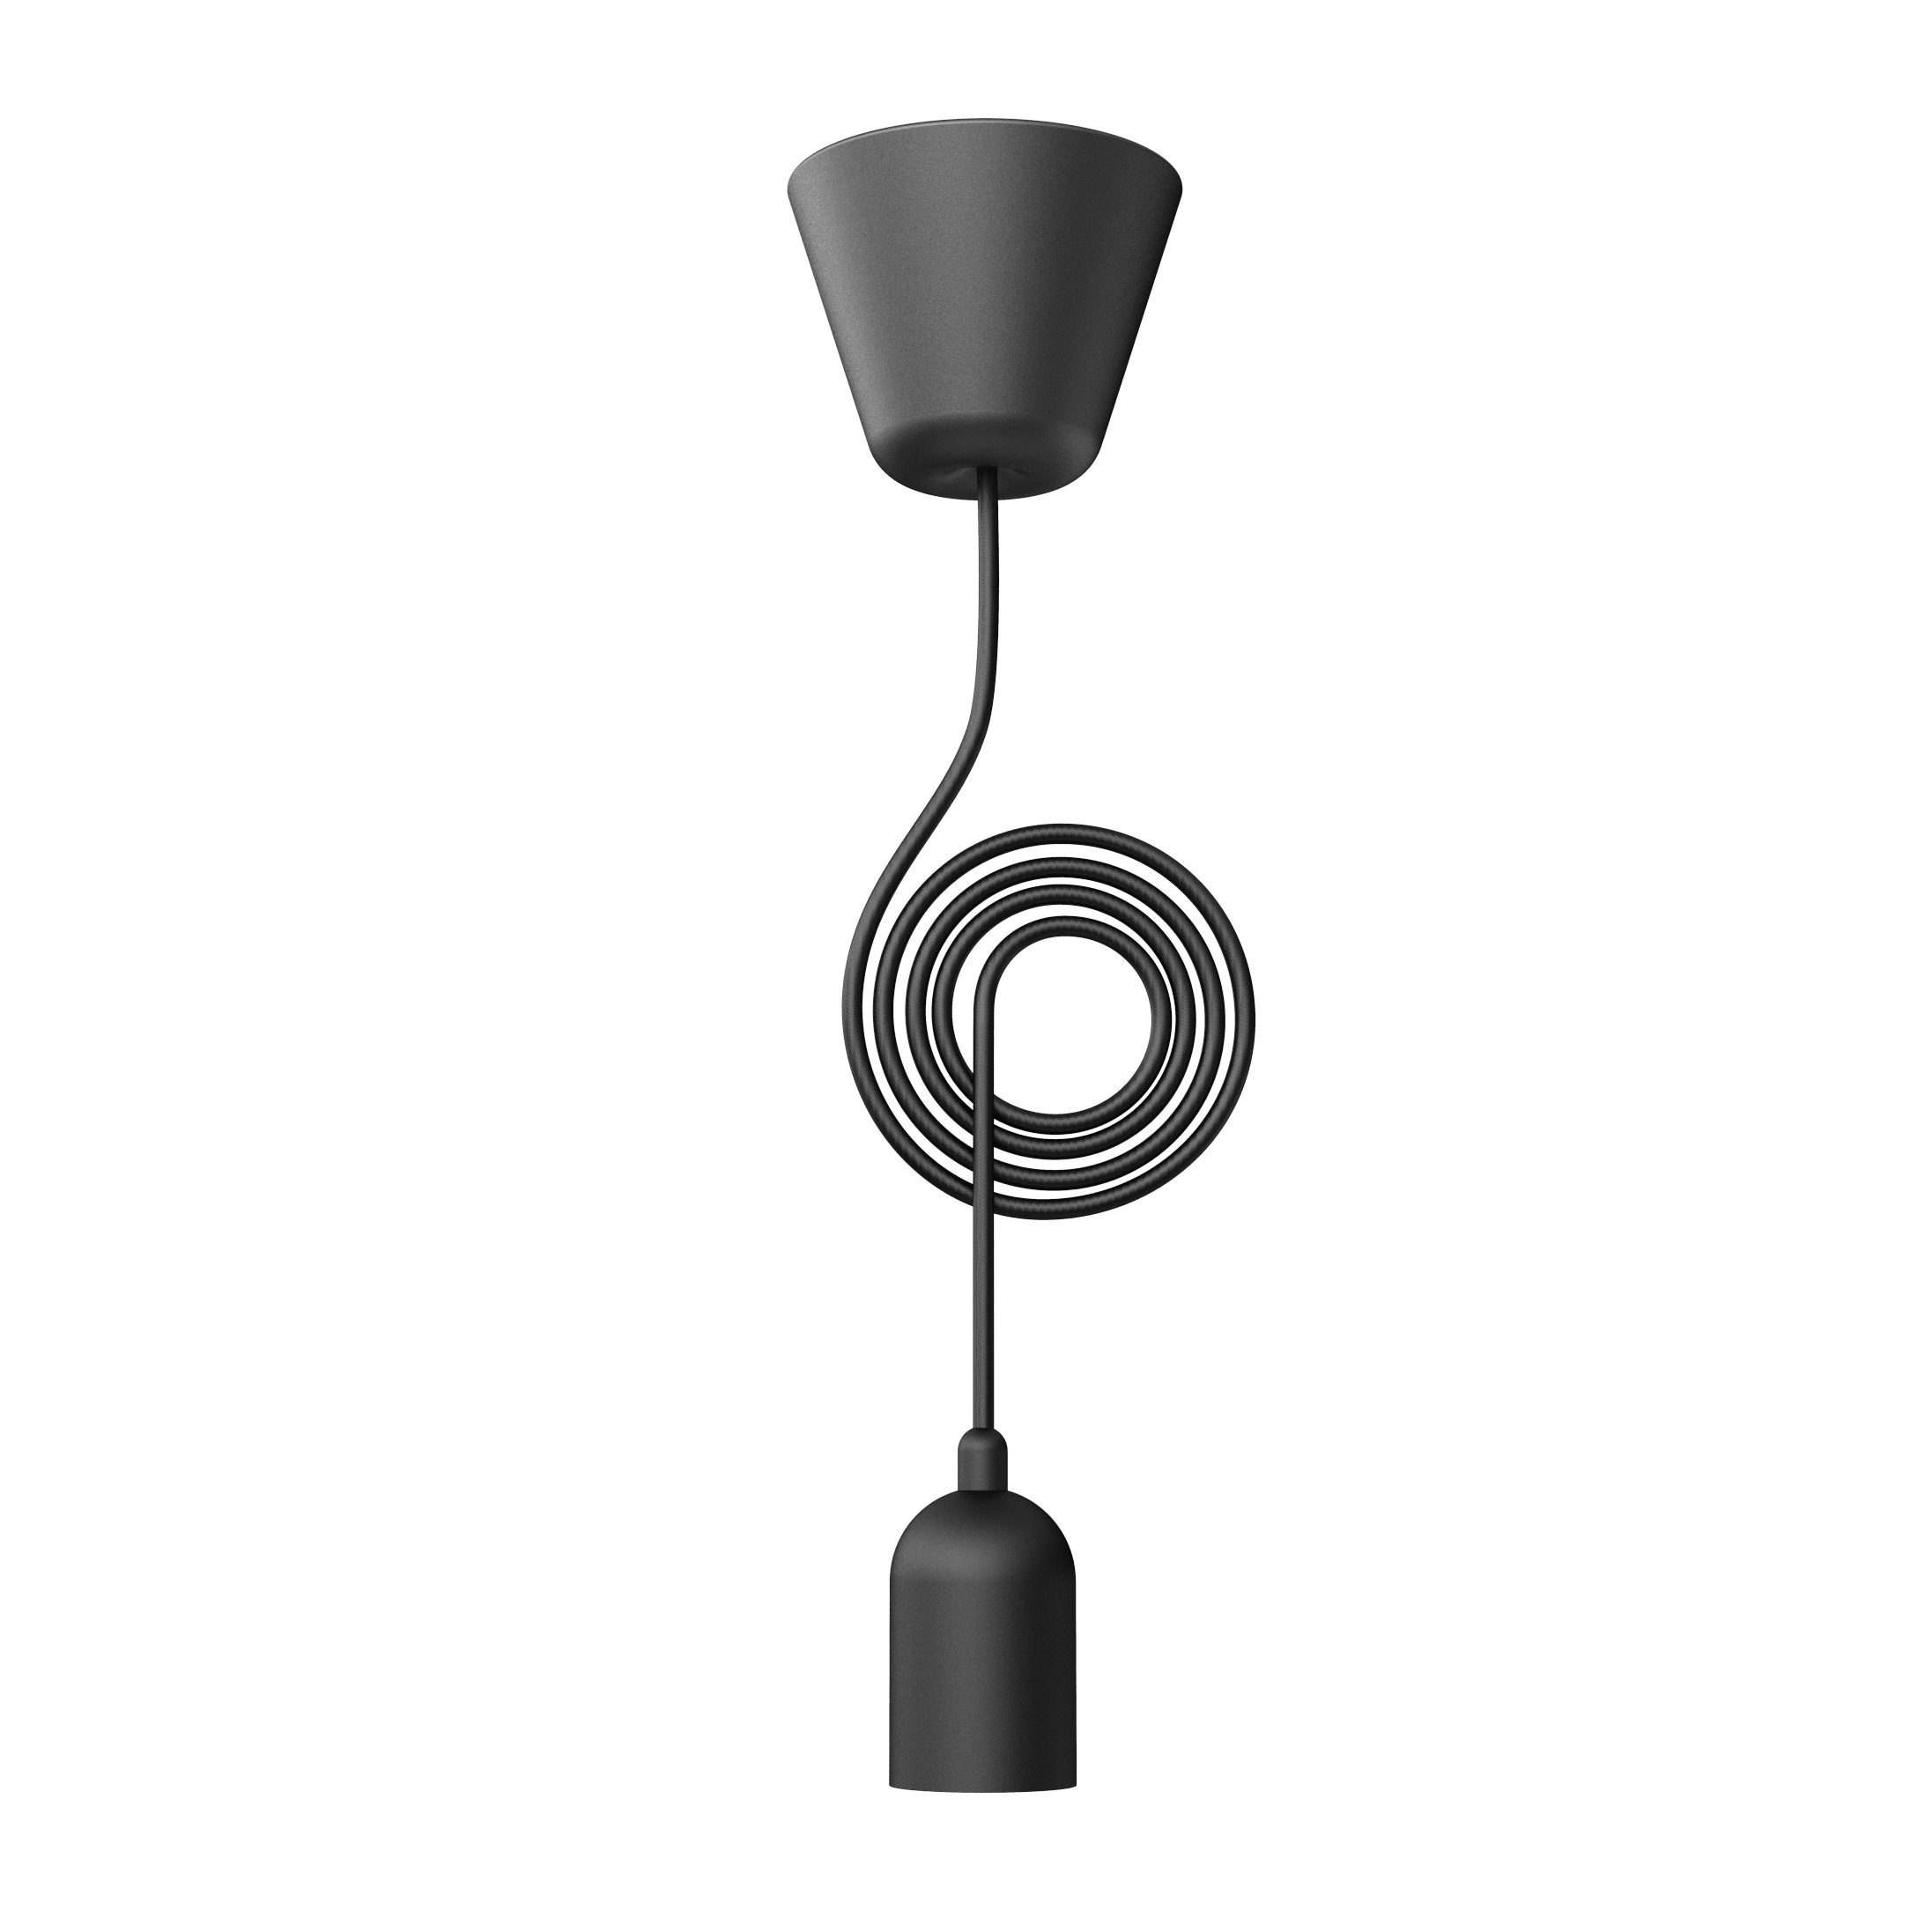 Nordlux Pendelleuchte Funk Pendelaufhängung suspension, ohne Leuchtmittel, Pendelaufhängung schwarz